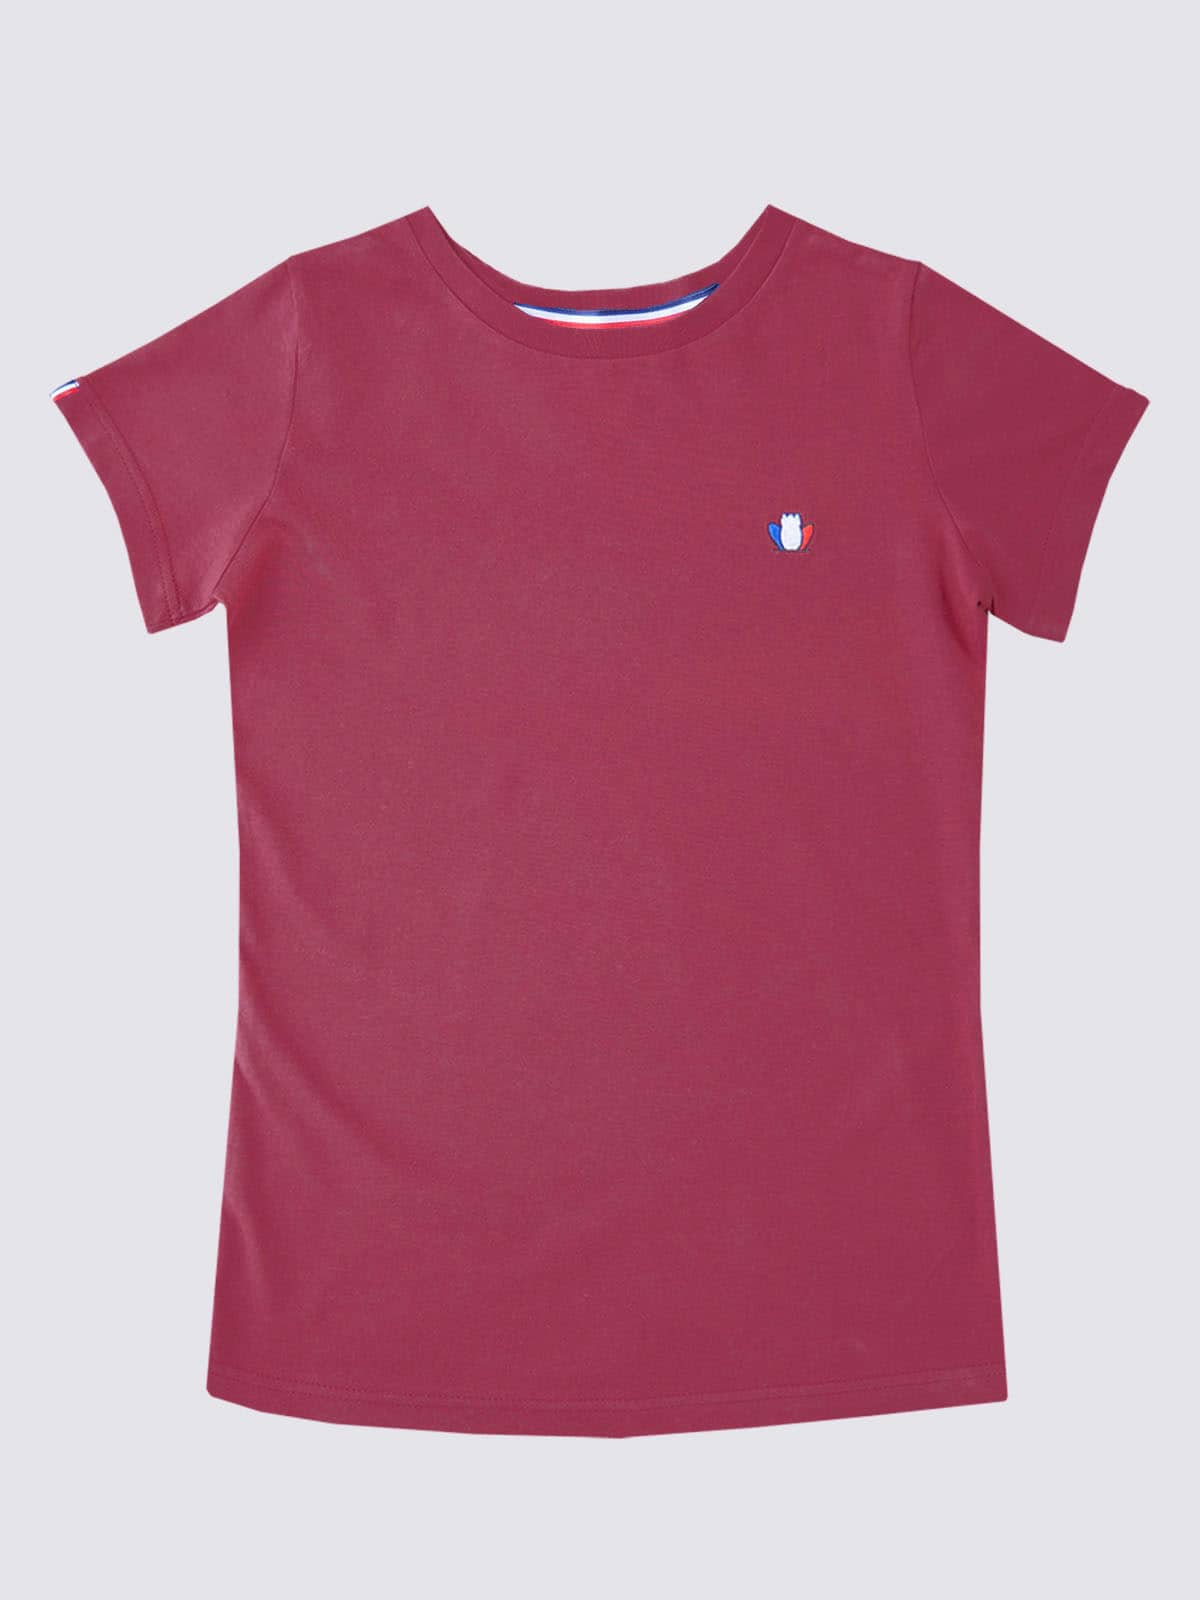 t-shirt-femme-made-in-france-l-authentique-rouge-bordeaux-1